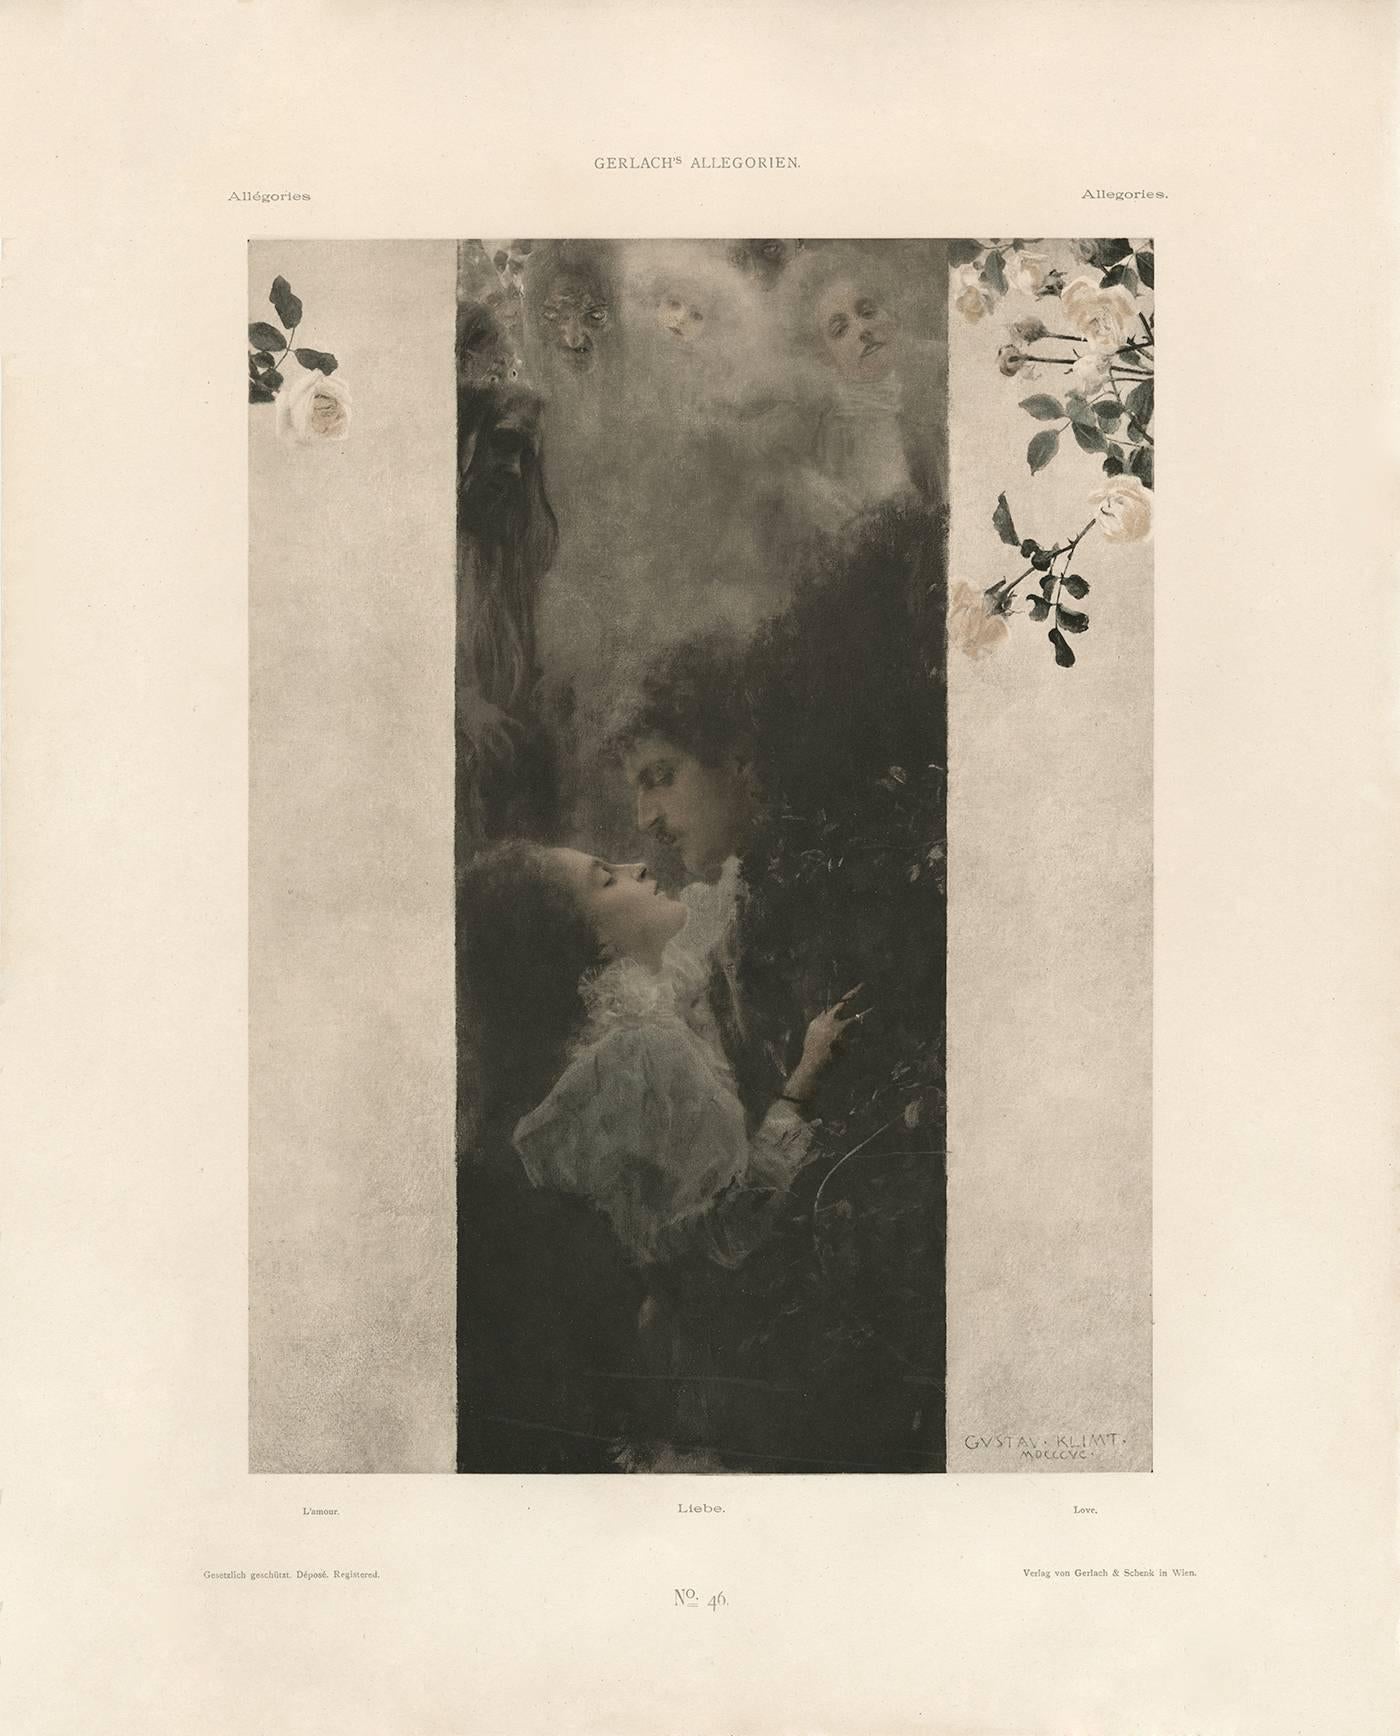 Allegorien de Gerlach, planche n° 46 : Lithographie « Love », Gustav Klimt.